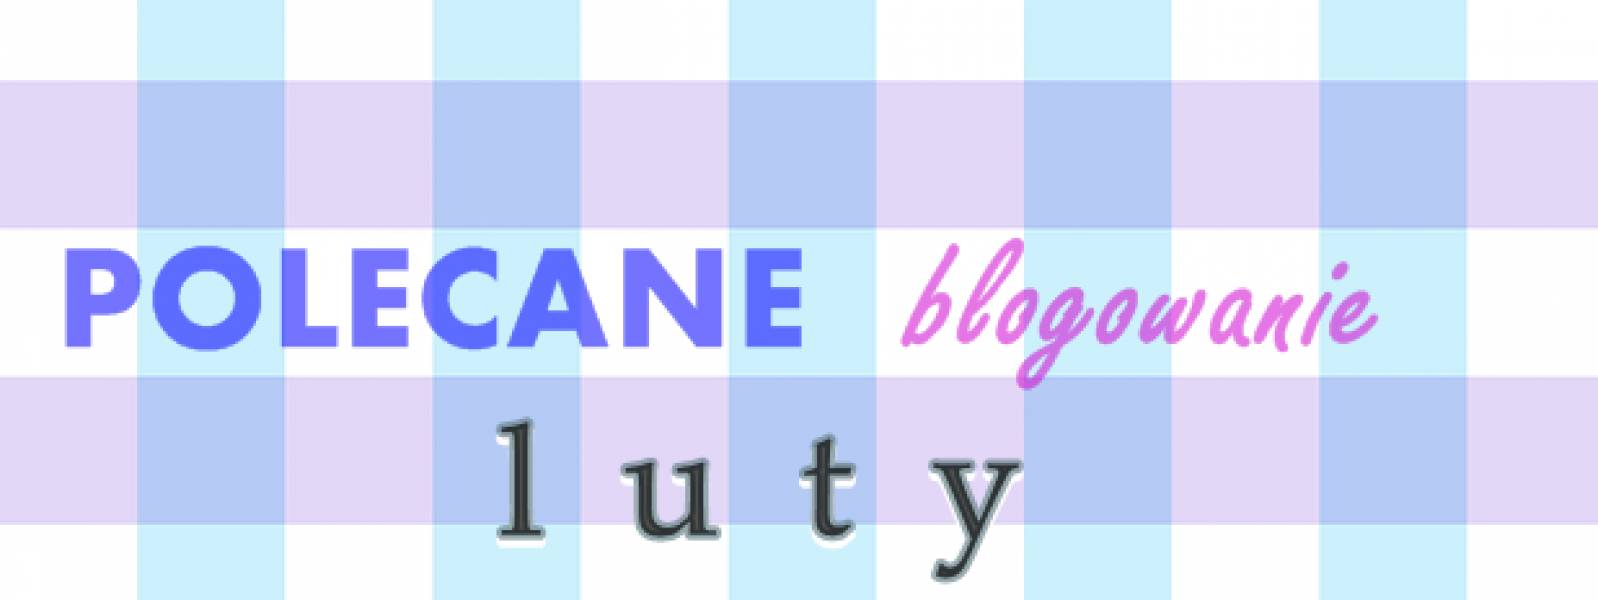 Polecane blogowanie - luty 2016 i linkowe party